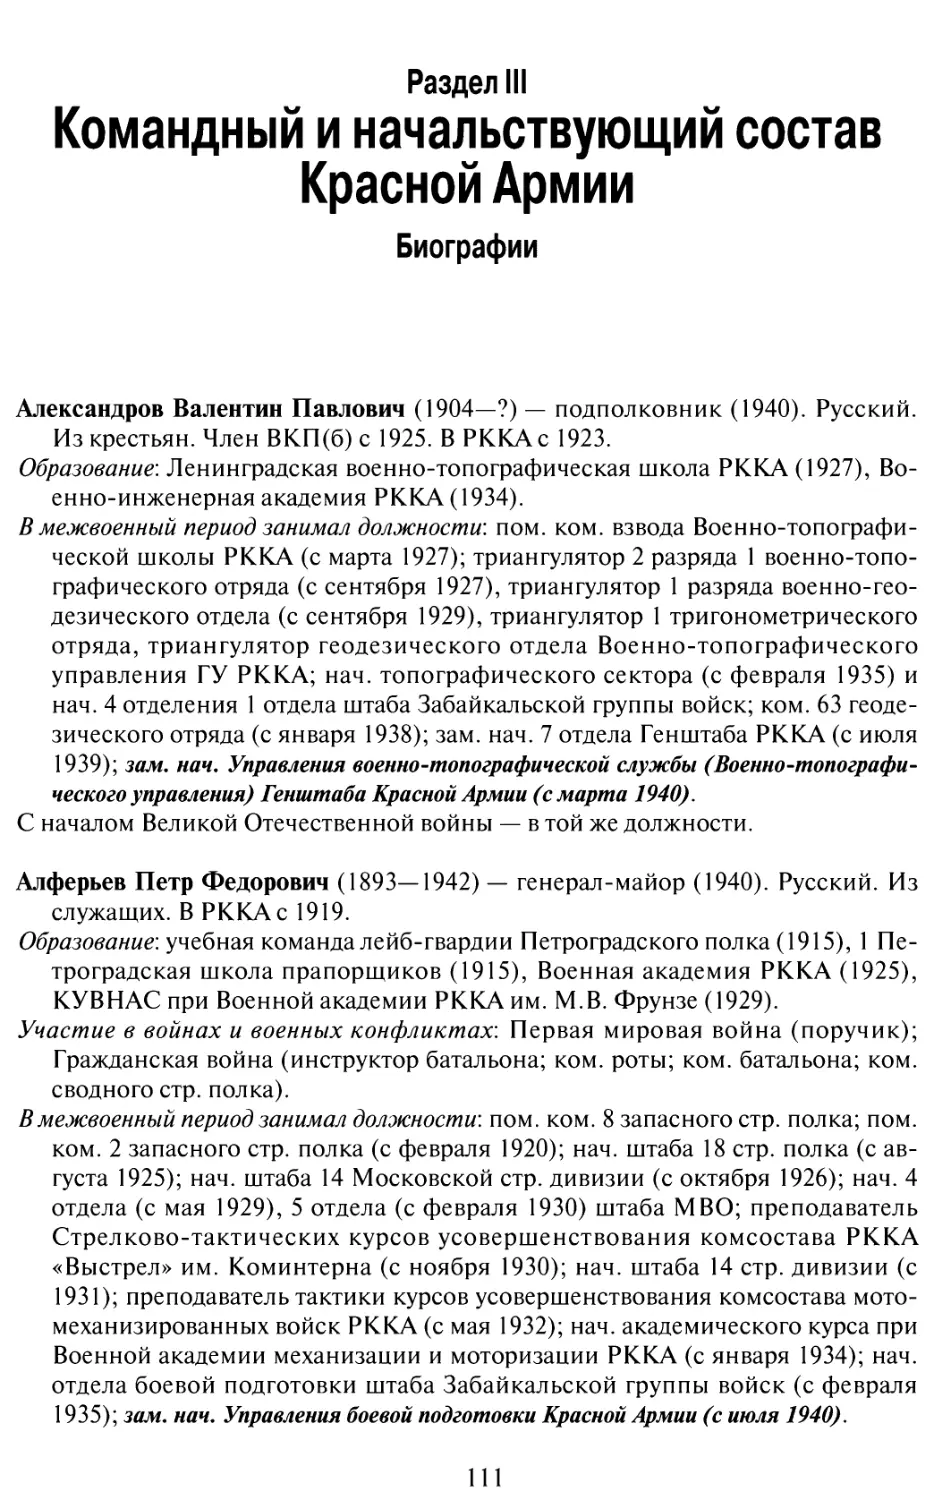 Раздел 3. Командный и начальствующий состав Красной Армии. Биографии